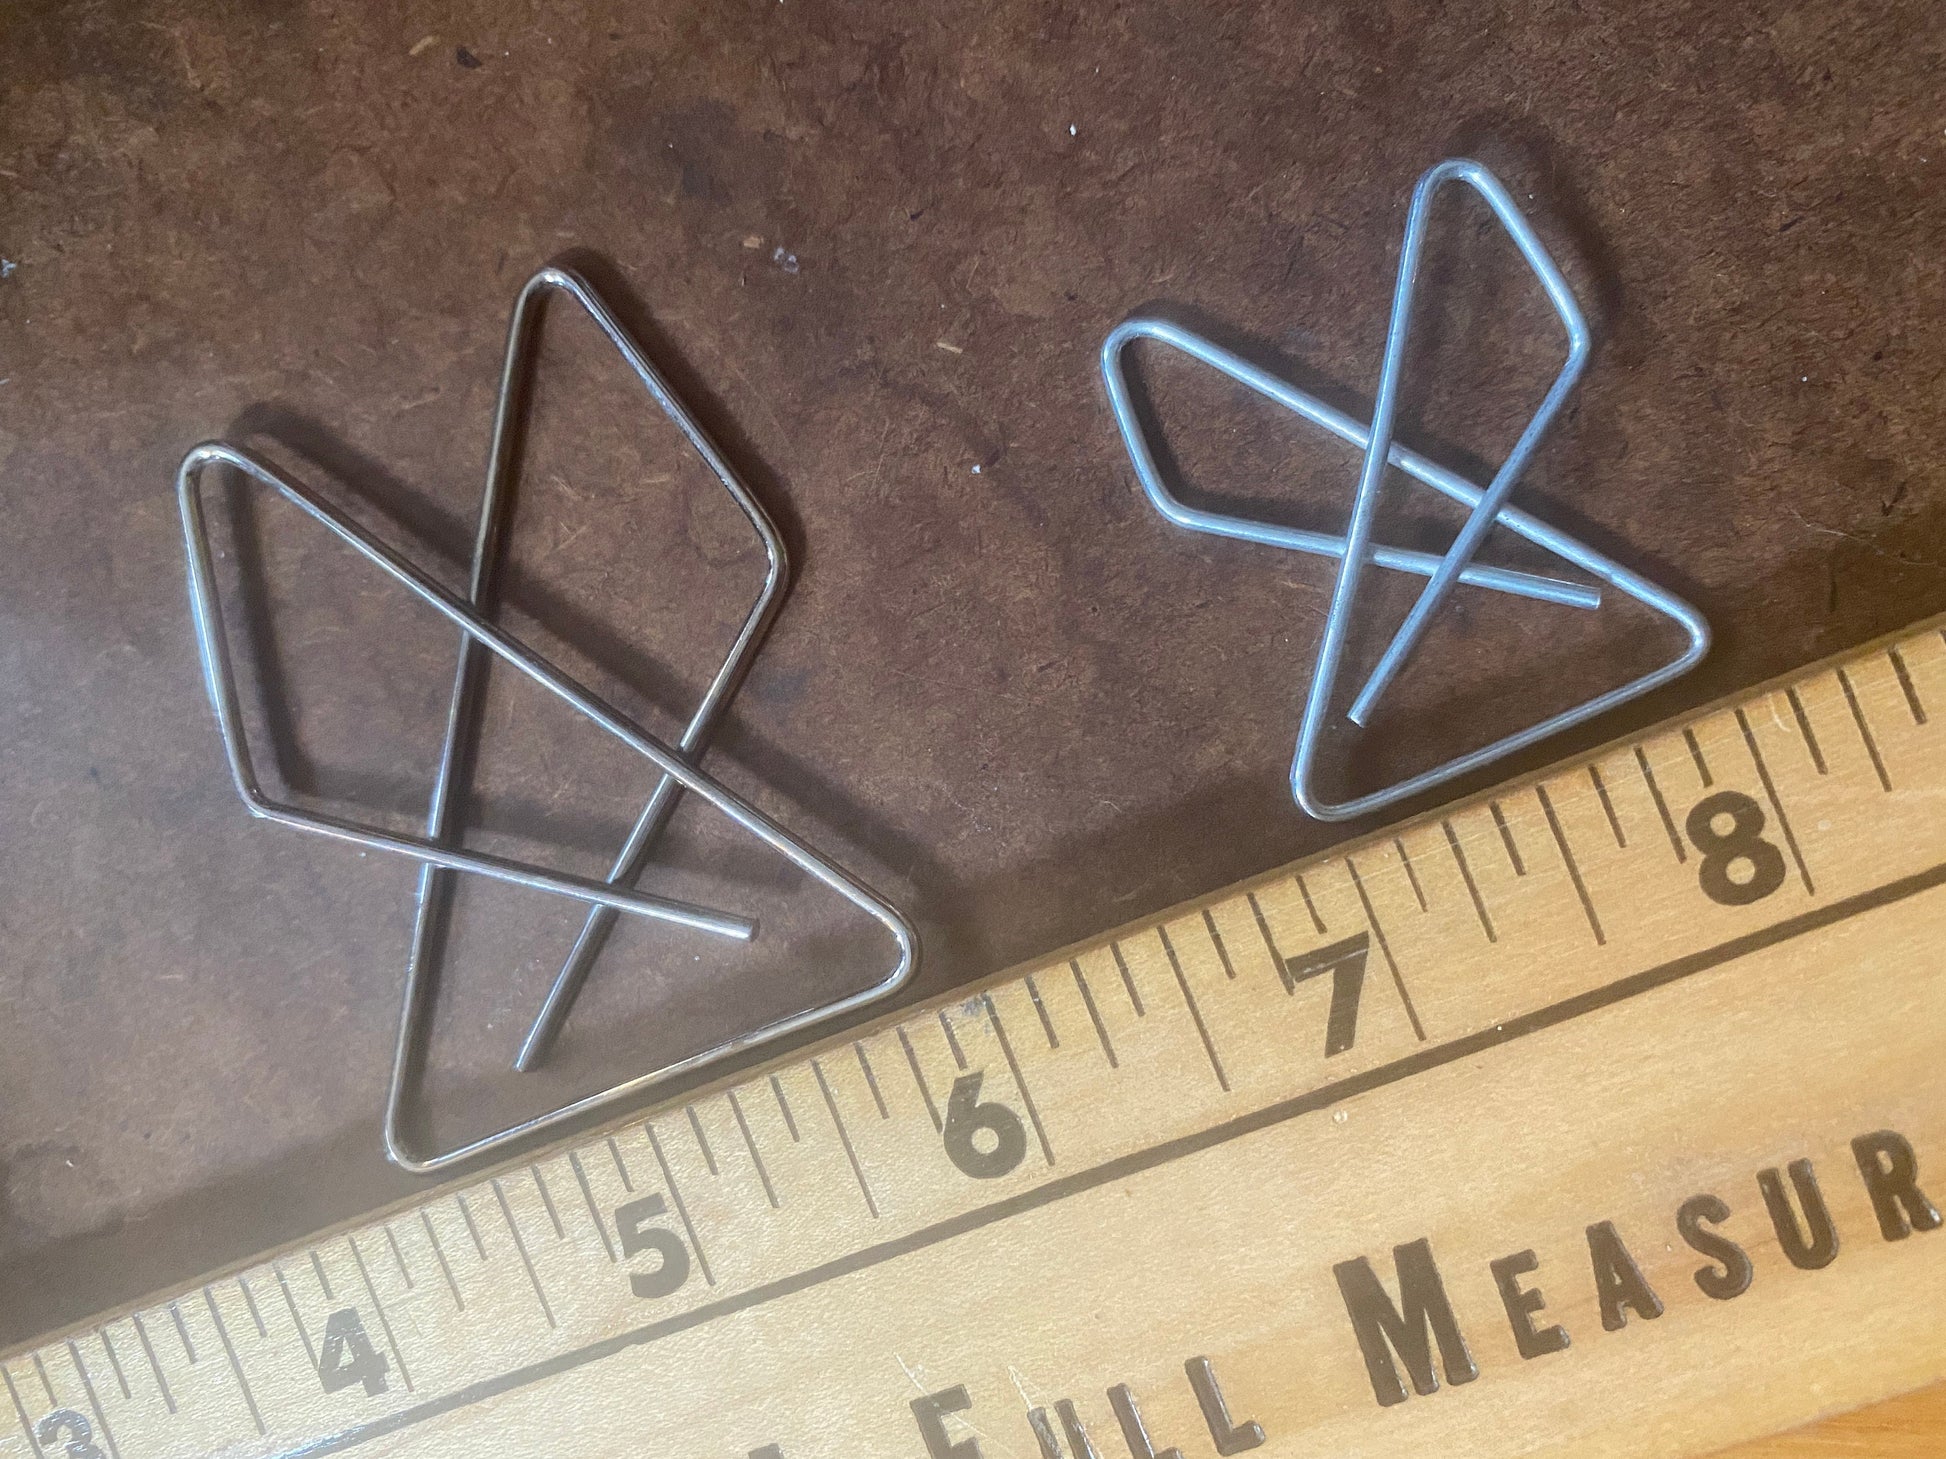 Trio of loose leaf binder rings – shopjunket